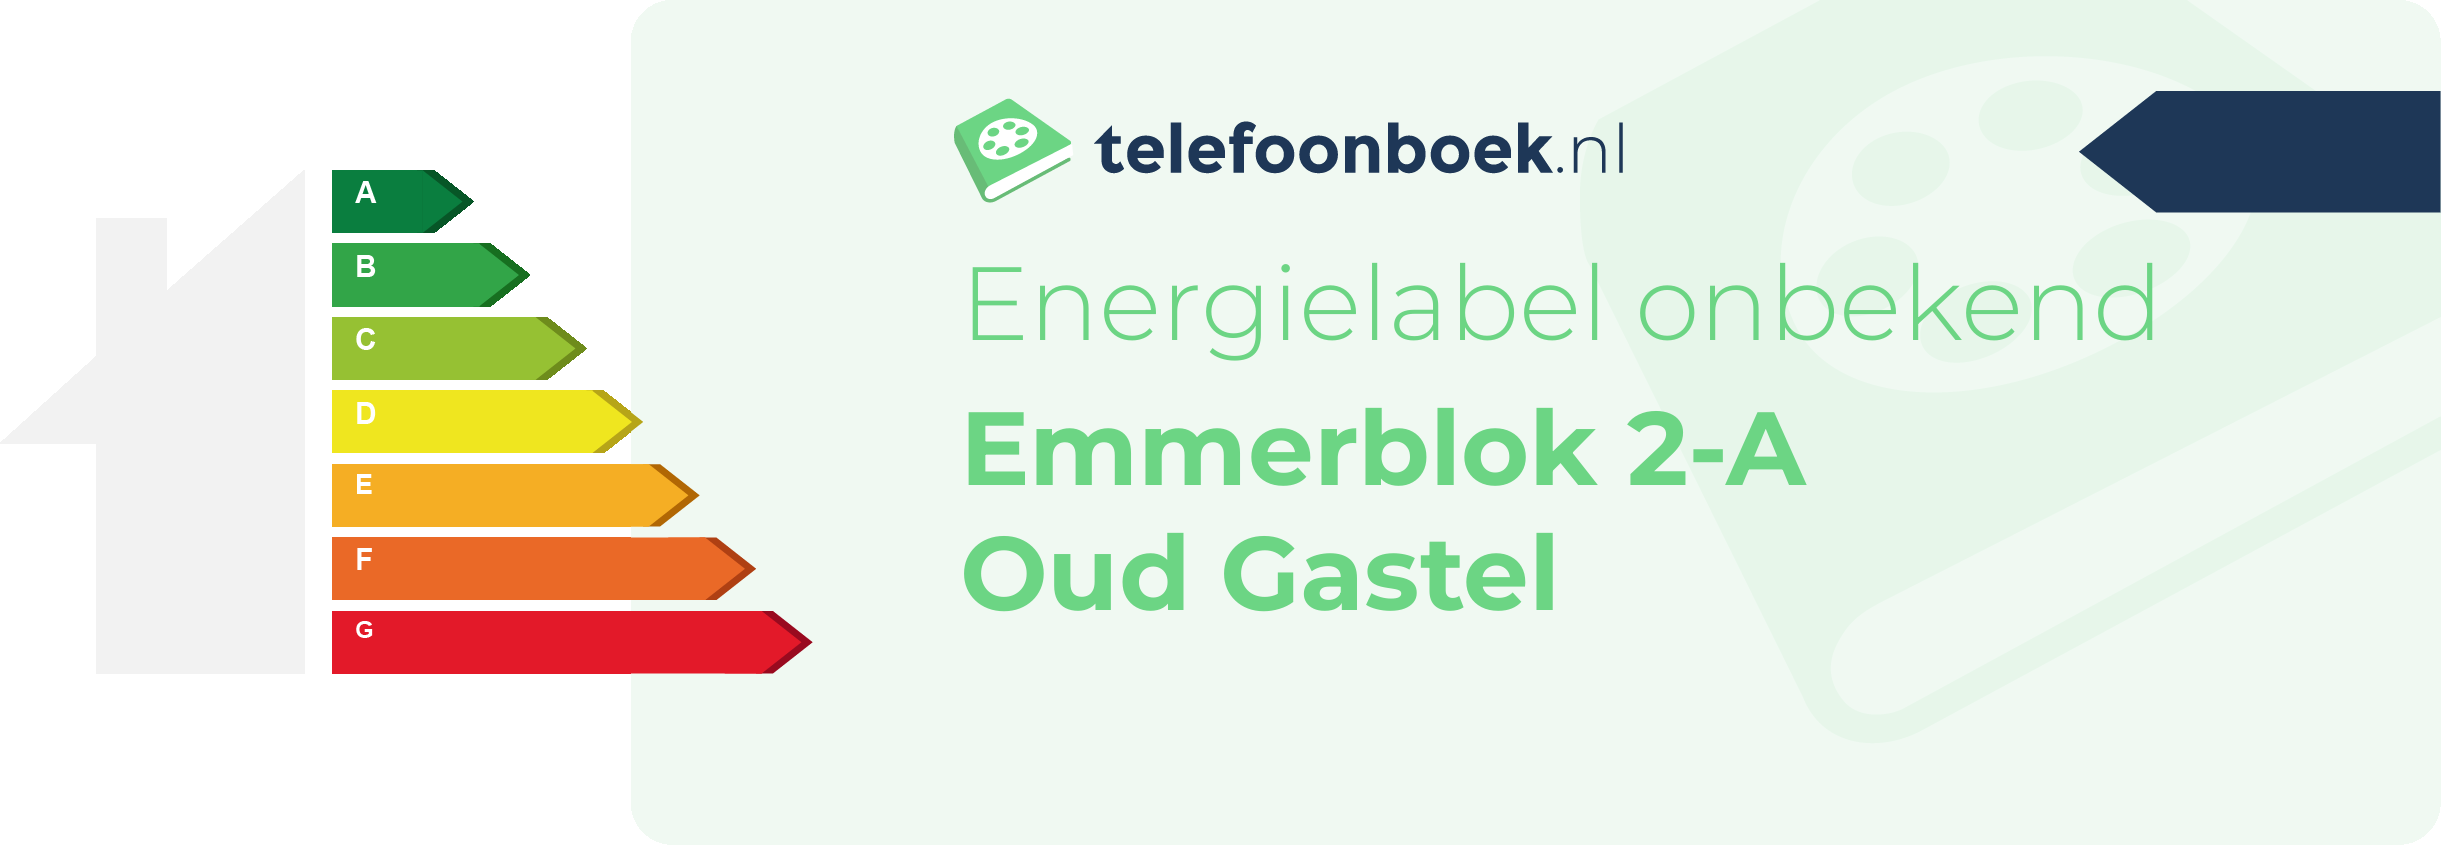 Energielabel Emmerblok 2-A Oud Gastel